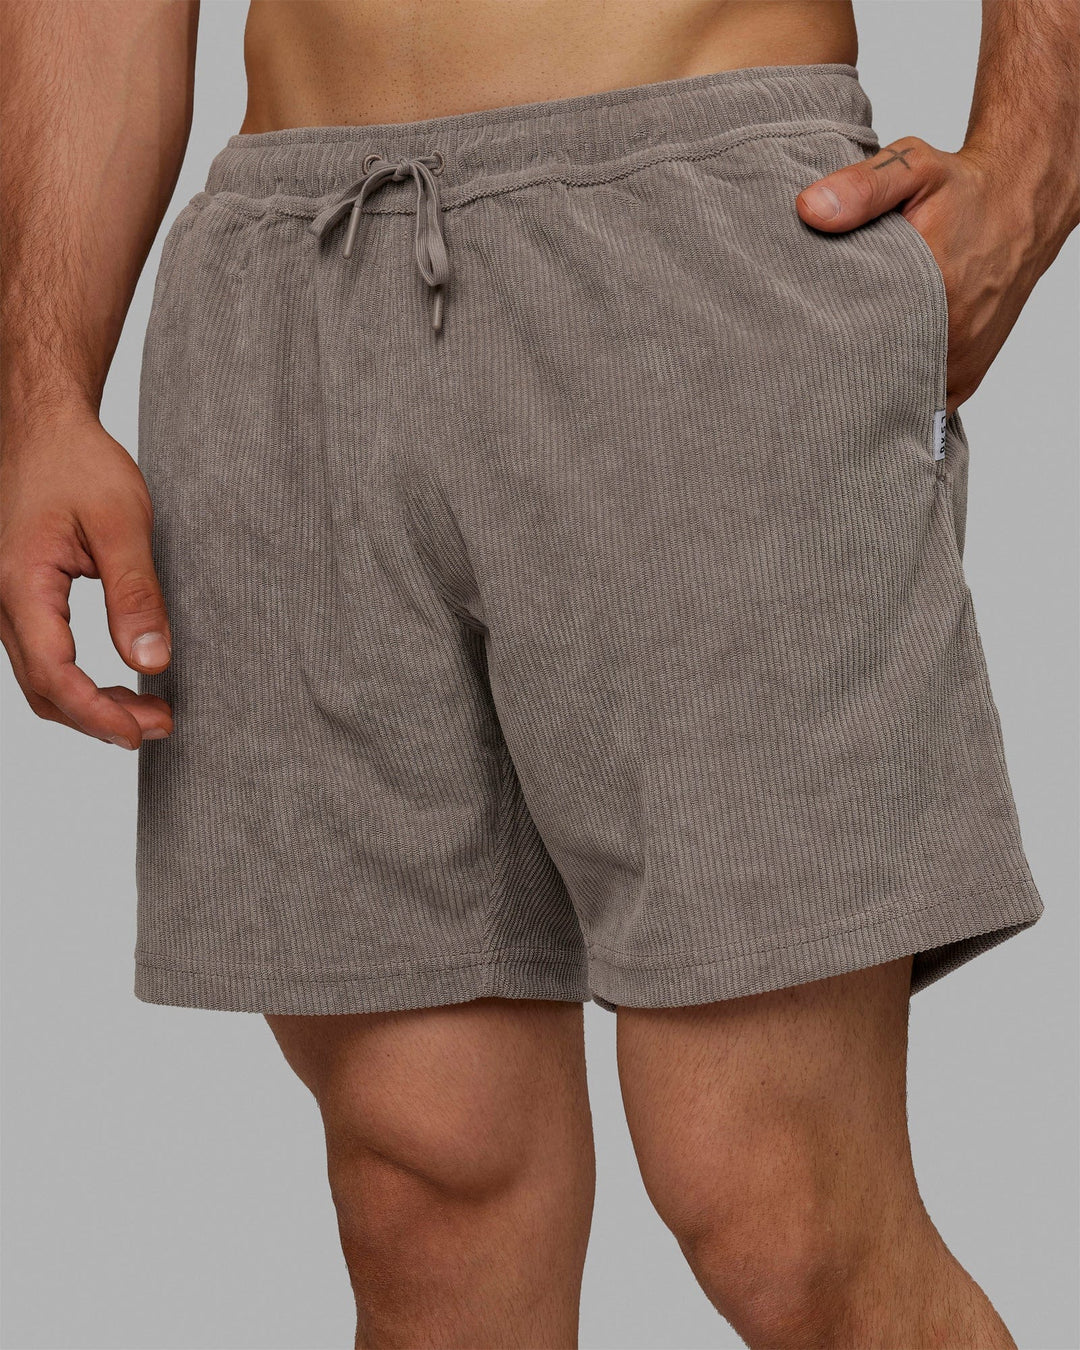 Daily 7" Cord Shorts - Cinder